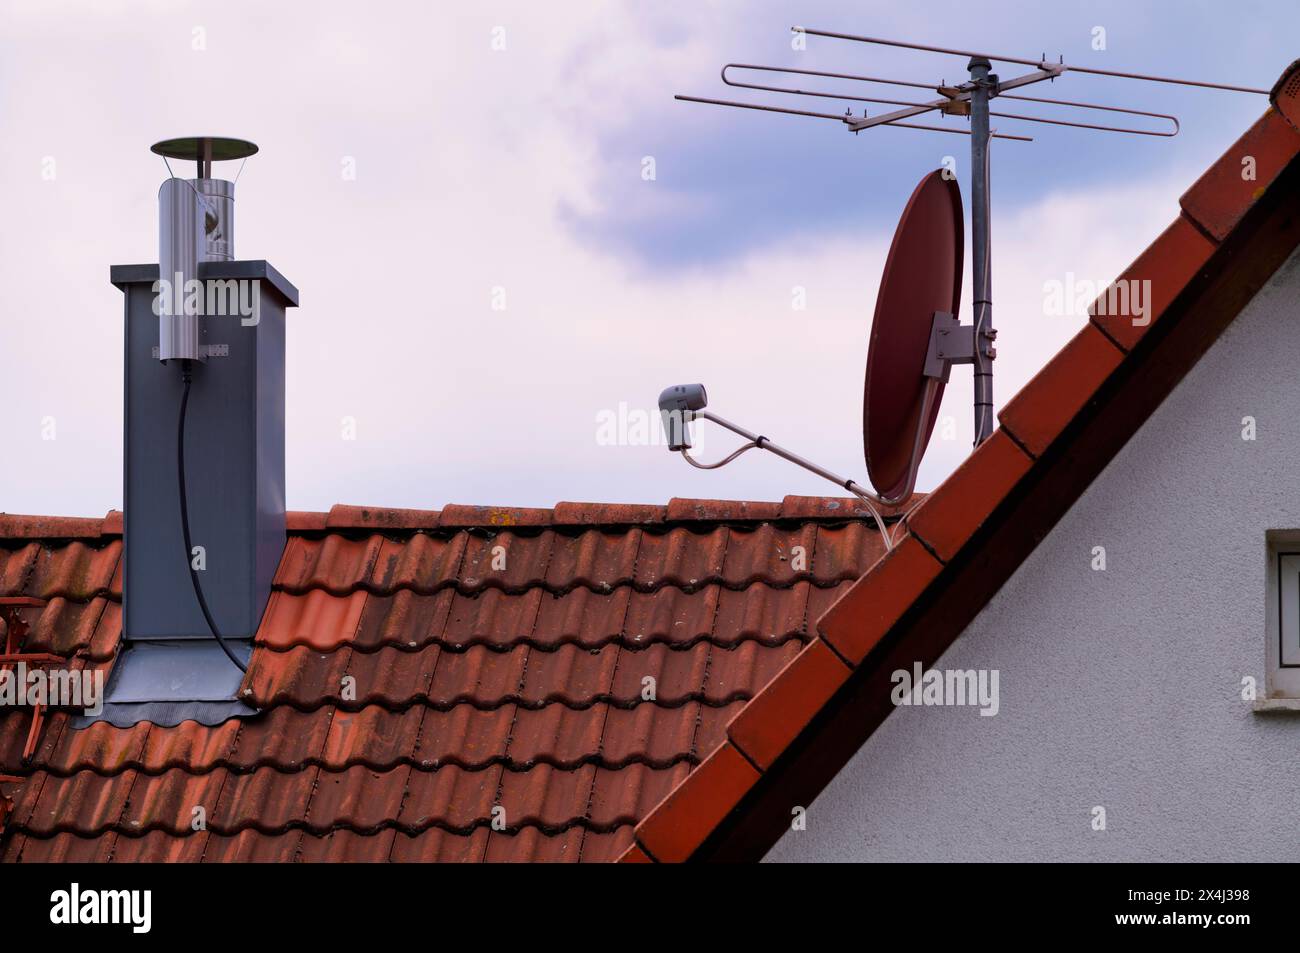 Nachträglicher Schornstein auf dem Dach, mit Staubabscheider, elektrostatischer Filterung von Rußpartikeln aus der Innenseite des Rauchrohres, Stromanschluss, Satell Stockfoto